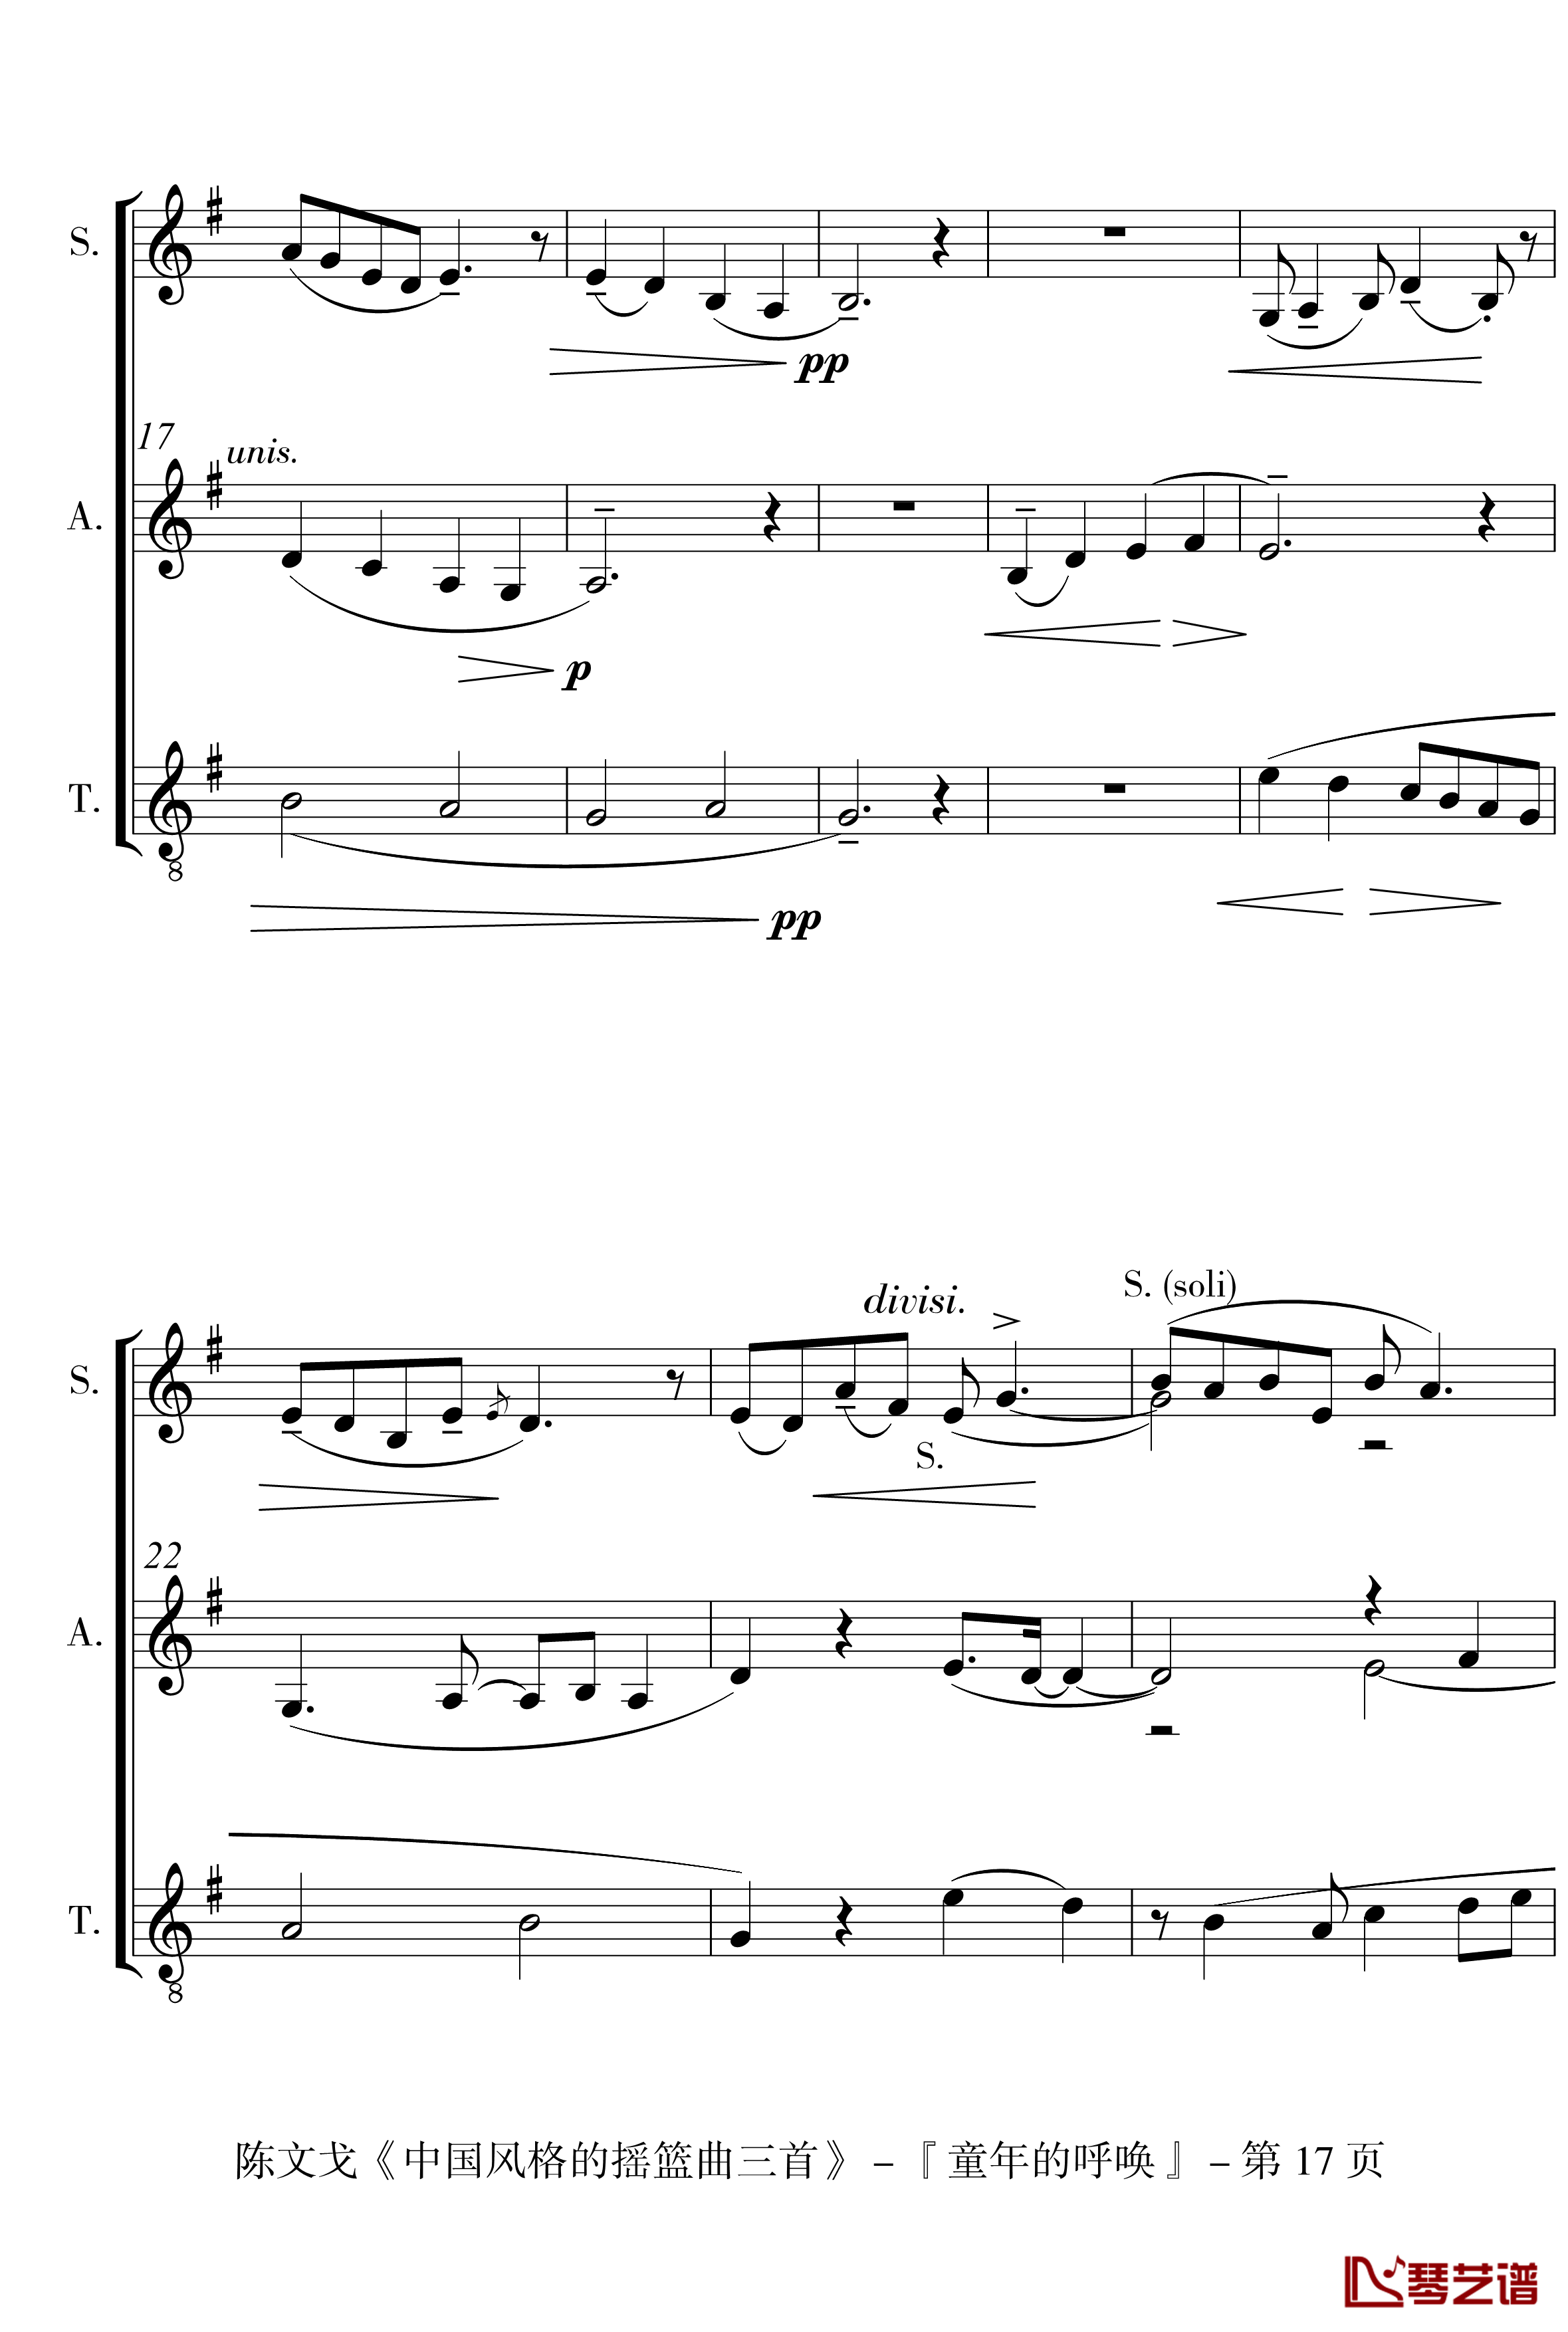 中国风格的合唱摇篮曲三首钢琴谱-I, II, III-陈文戈17